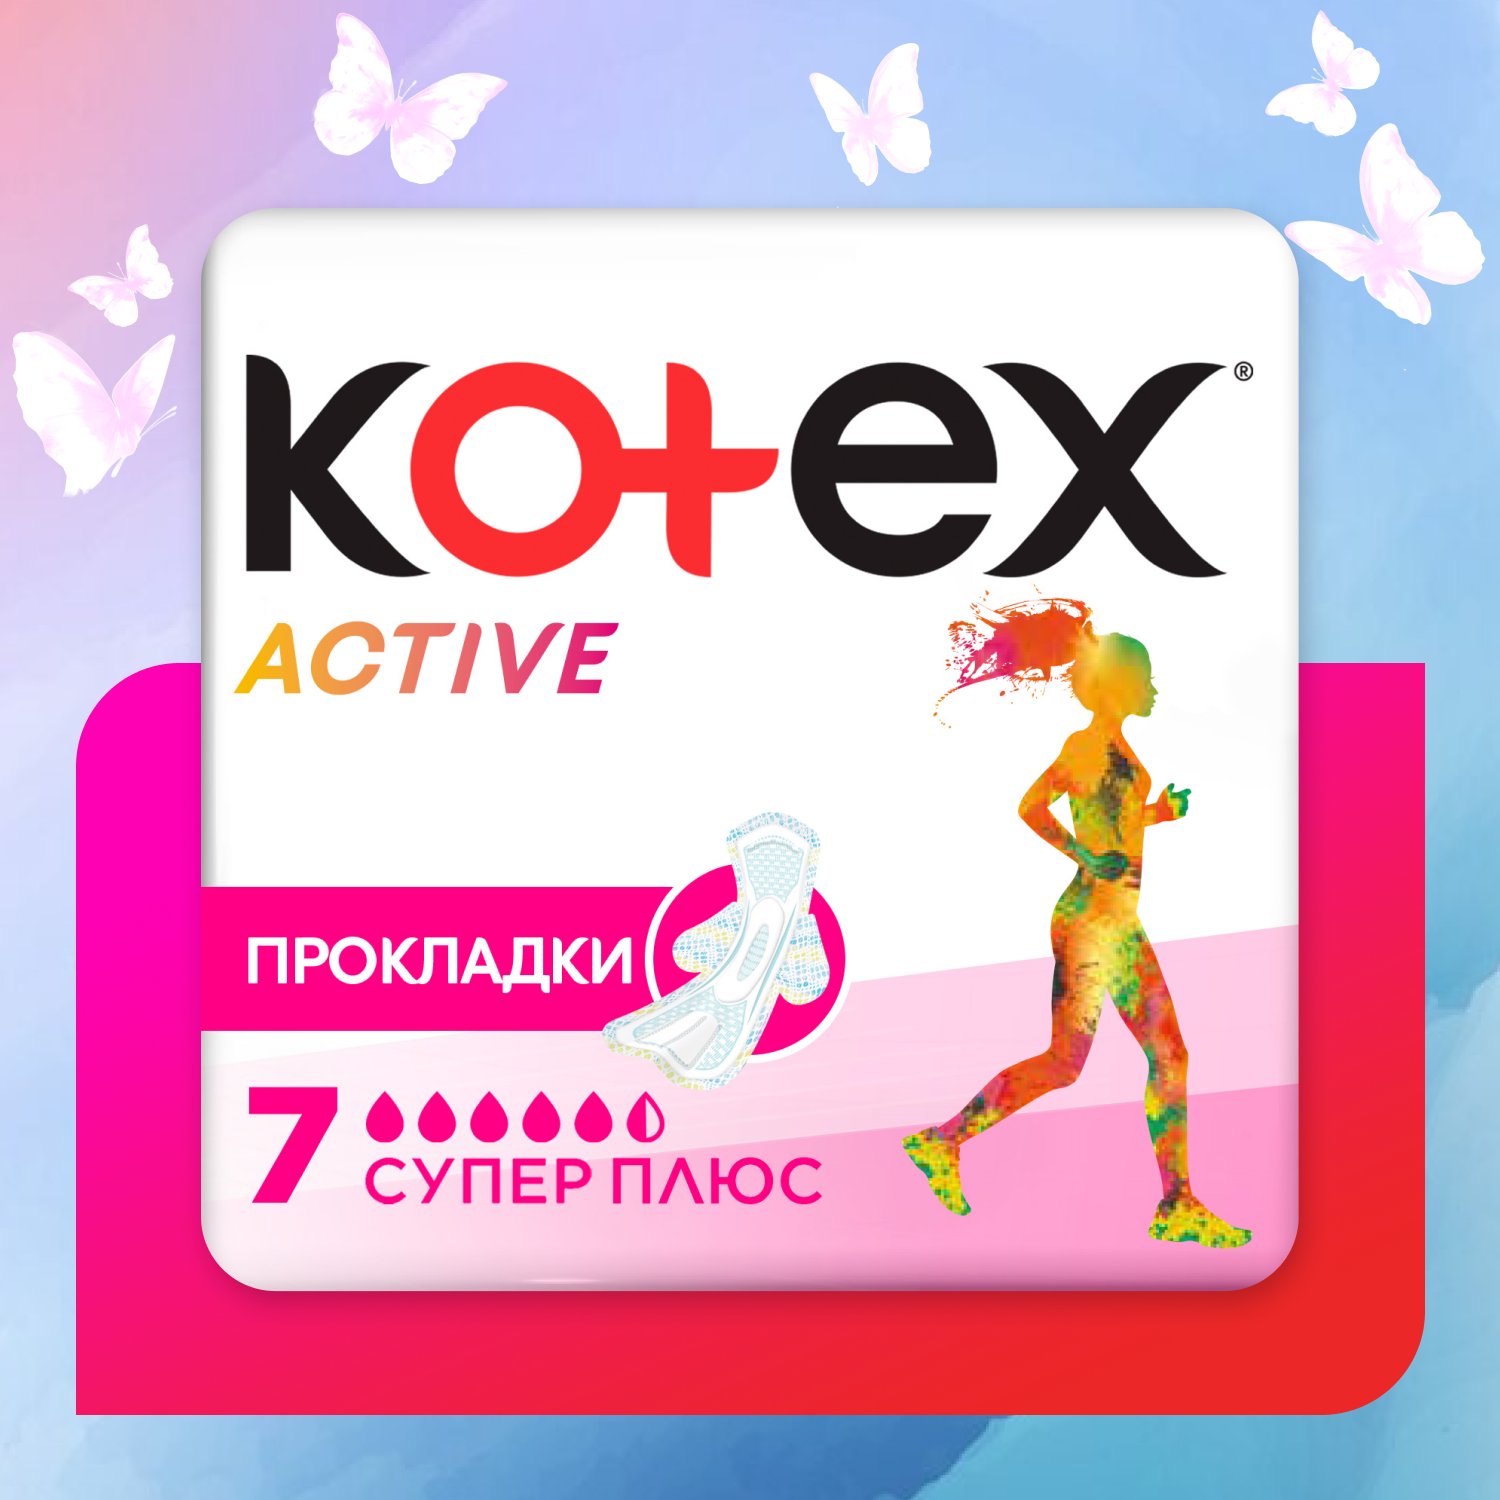 Прокладки KOTEX Эктив супер плюс 7шт - фото 1